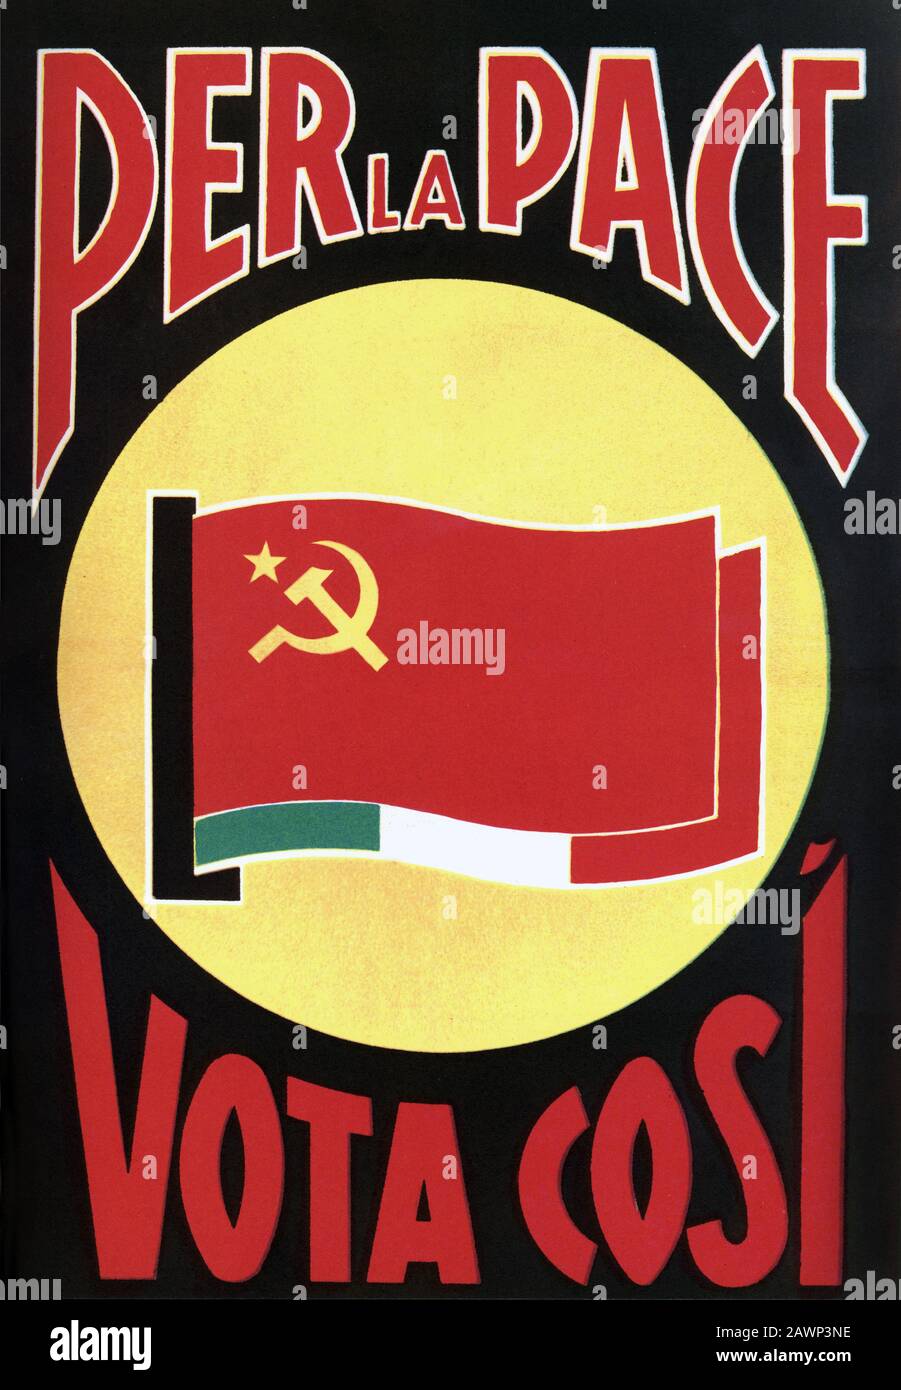 Partito Comunista Italiano Poster - 100 anni / 50x70 / feat. Testi Manifesti